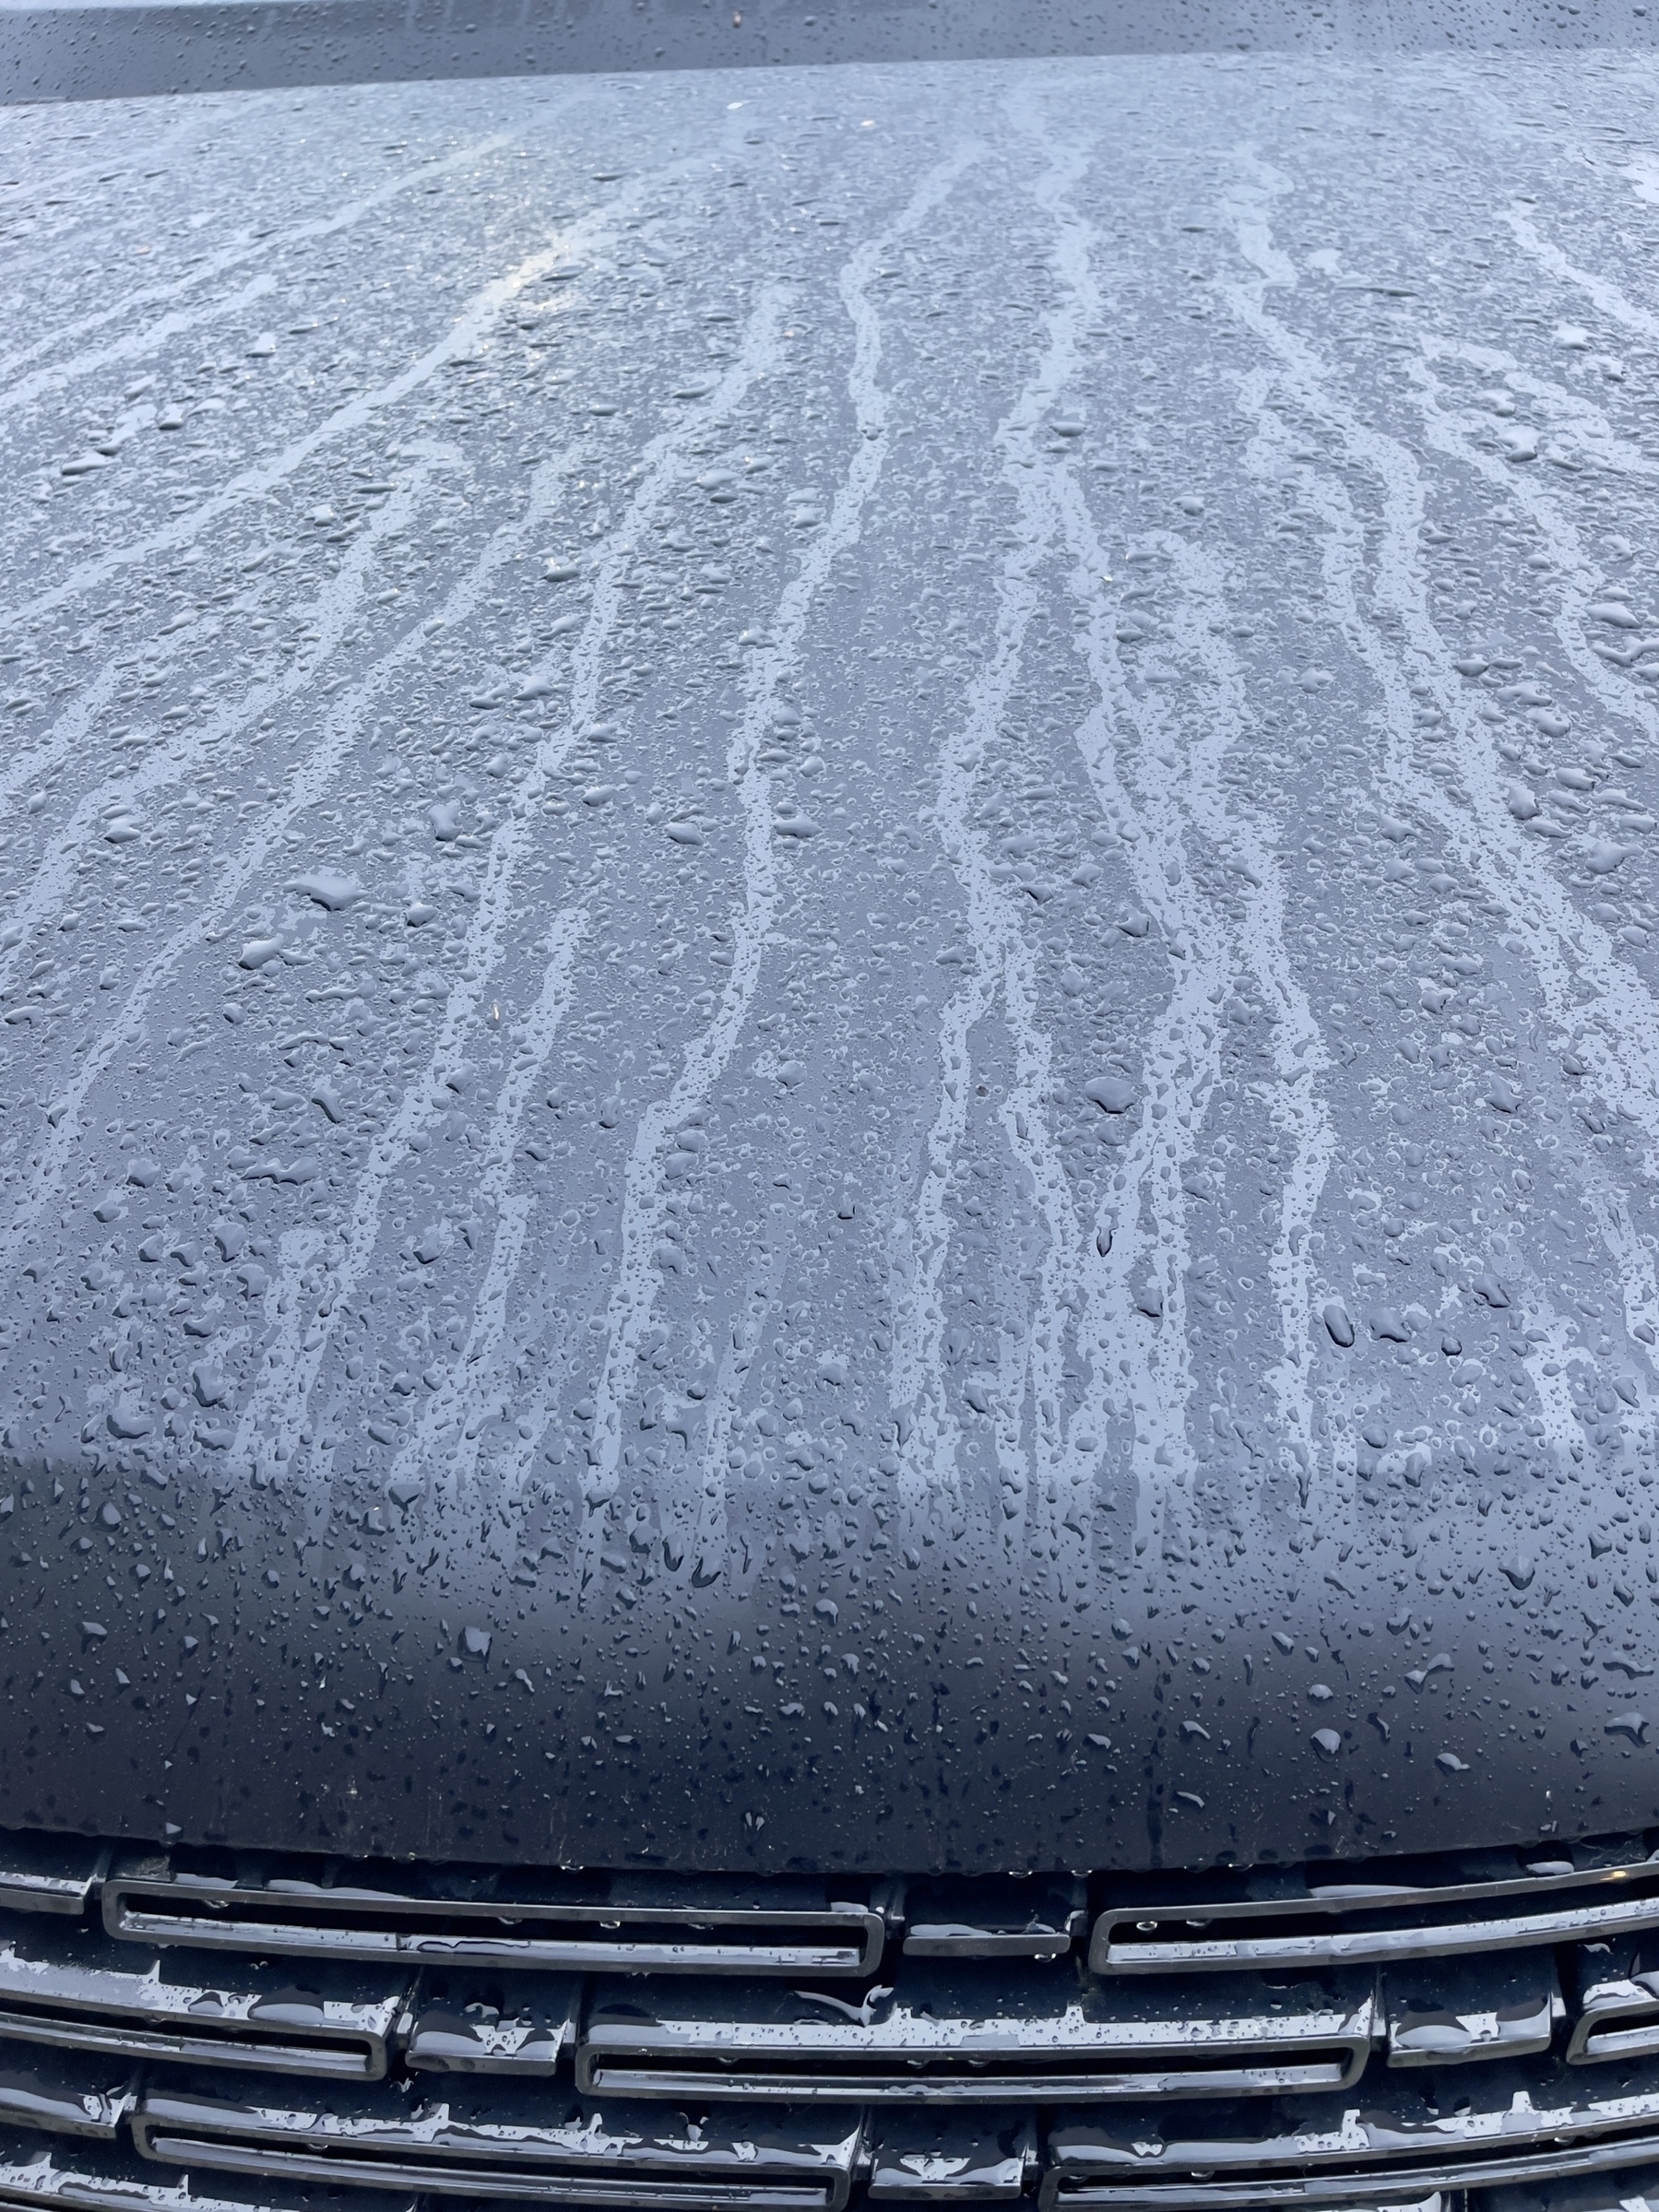 Raindrops and streaks on a car hood.